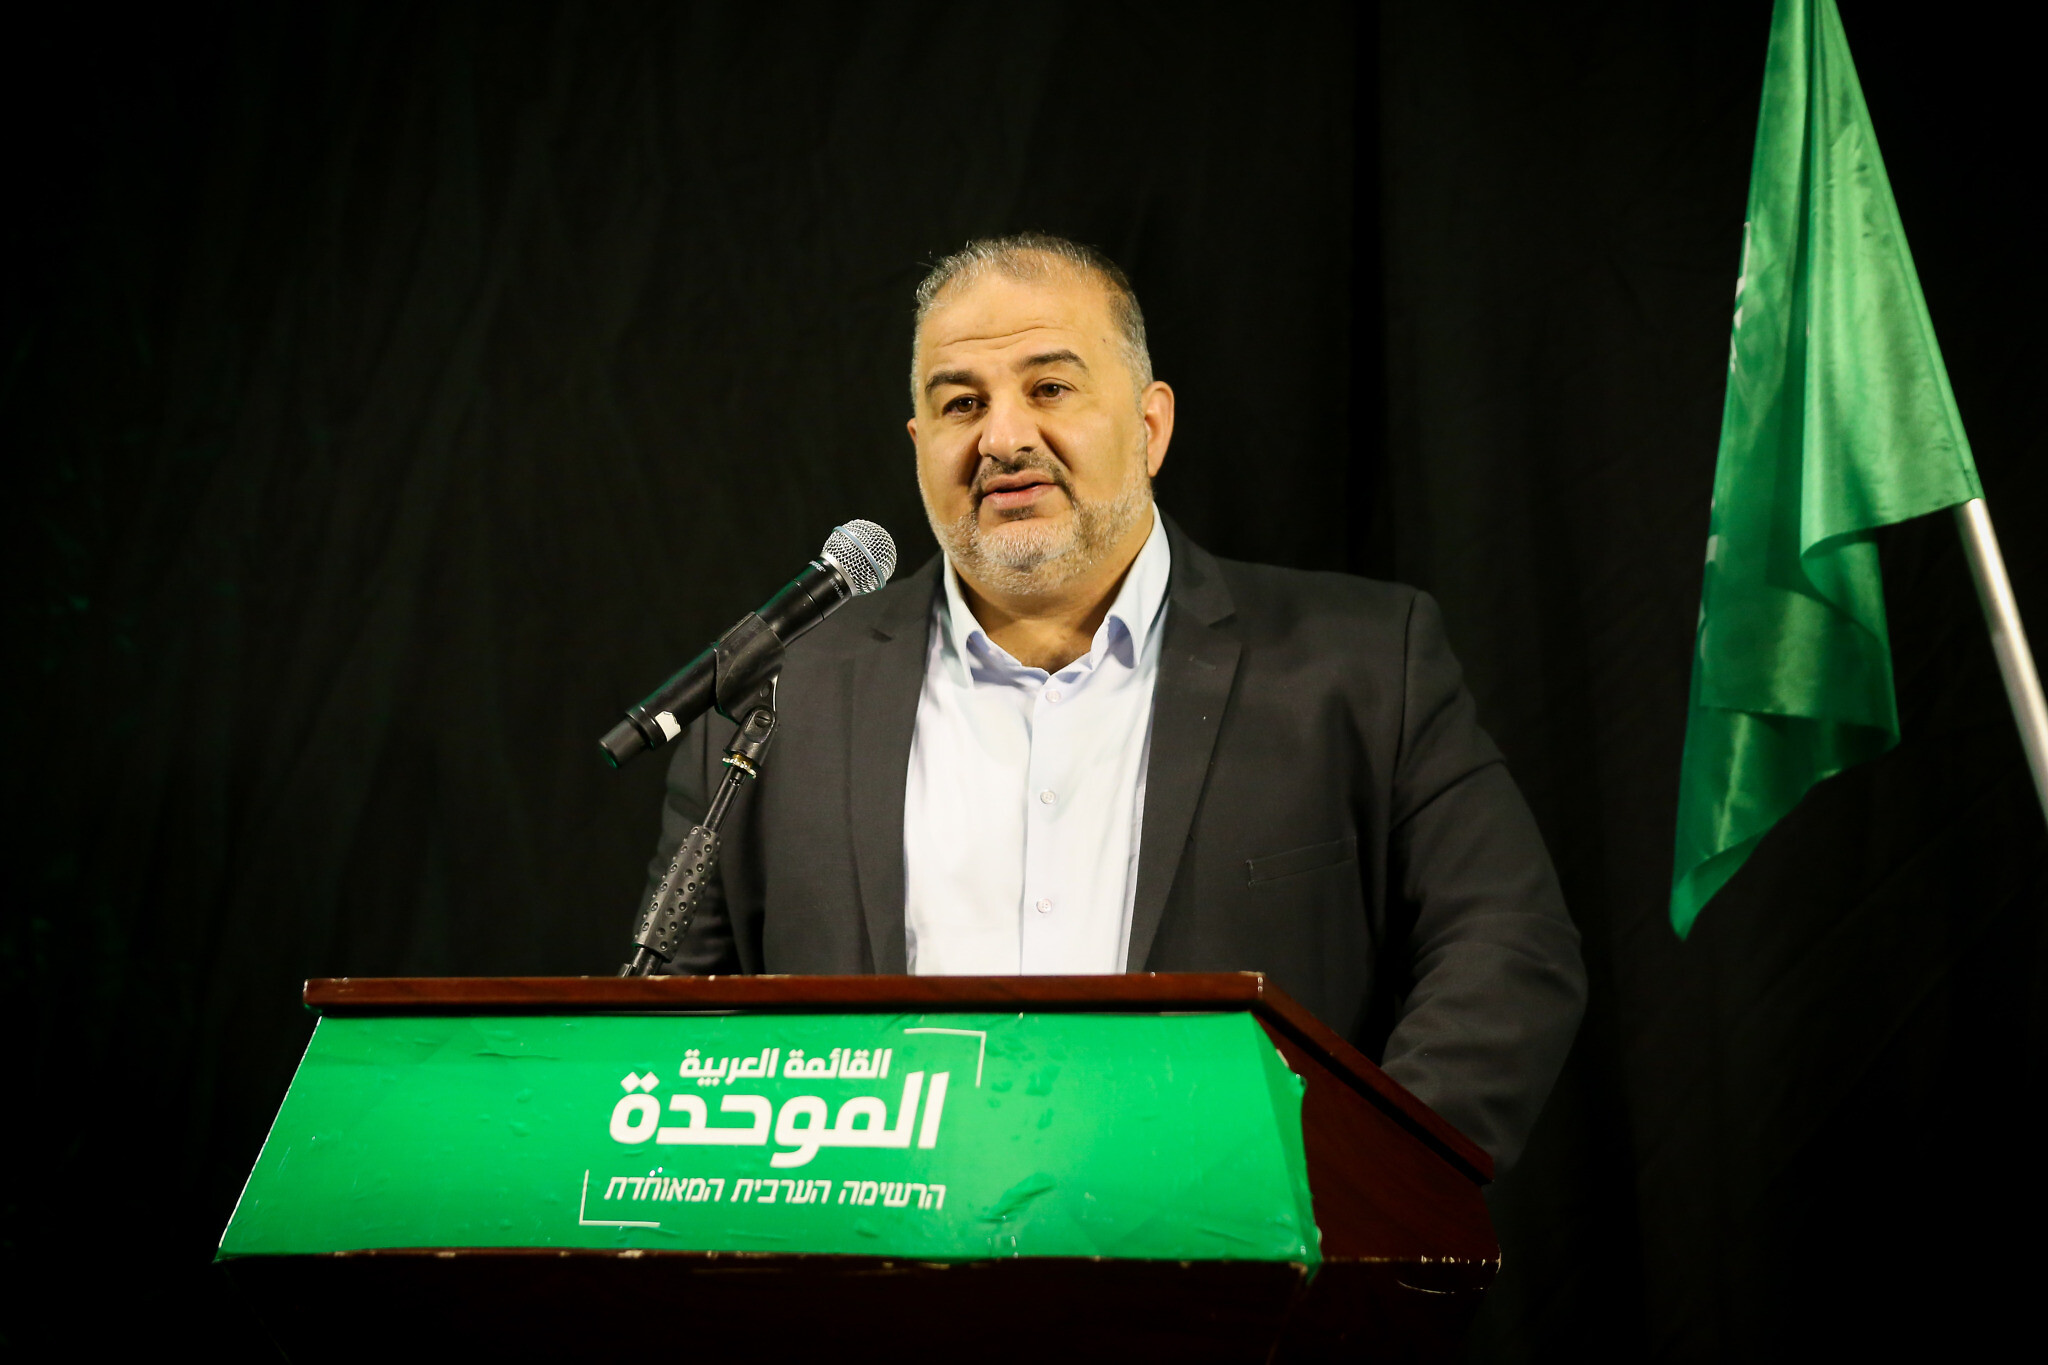 Исламист Аббас призывает к еврейско-арабскому сотрудничеству